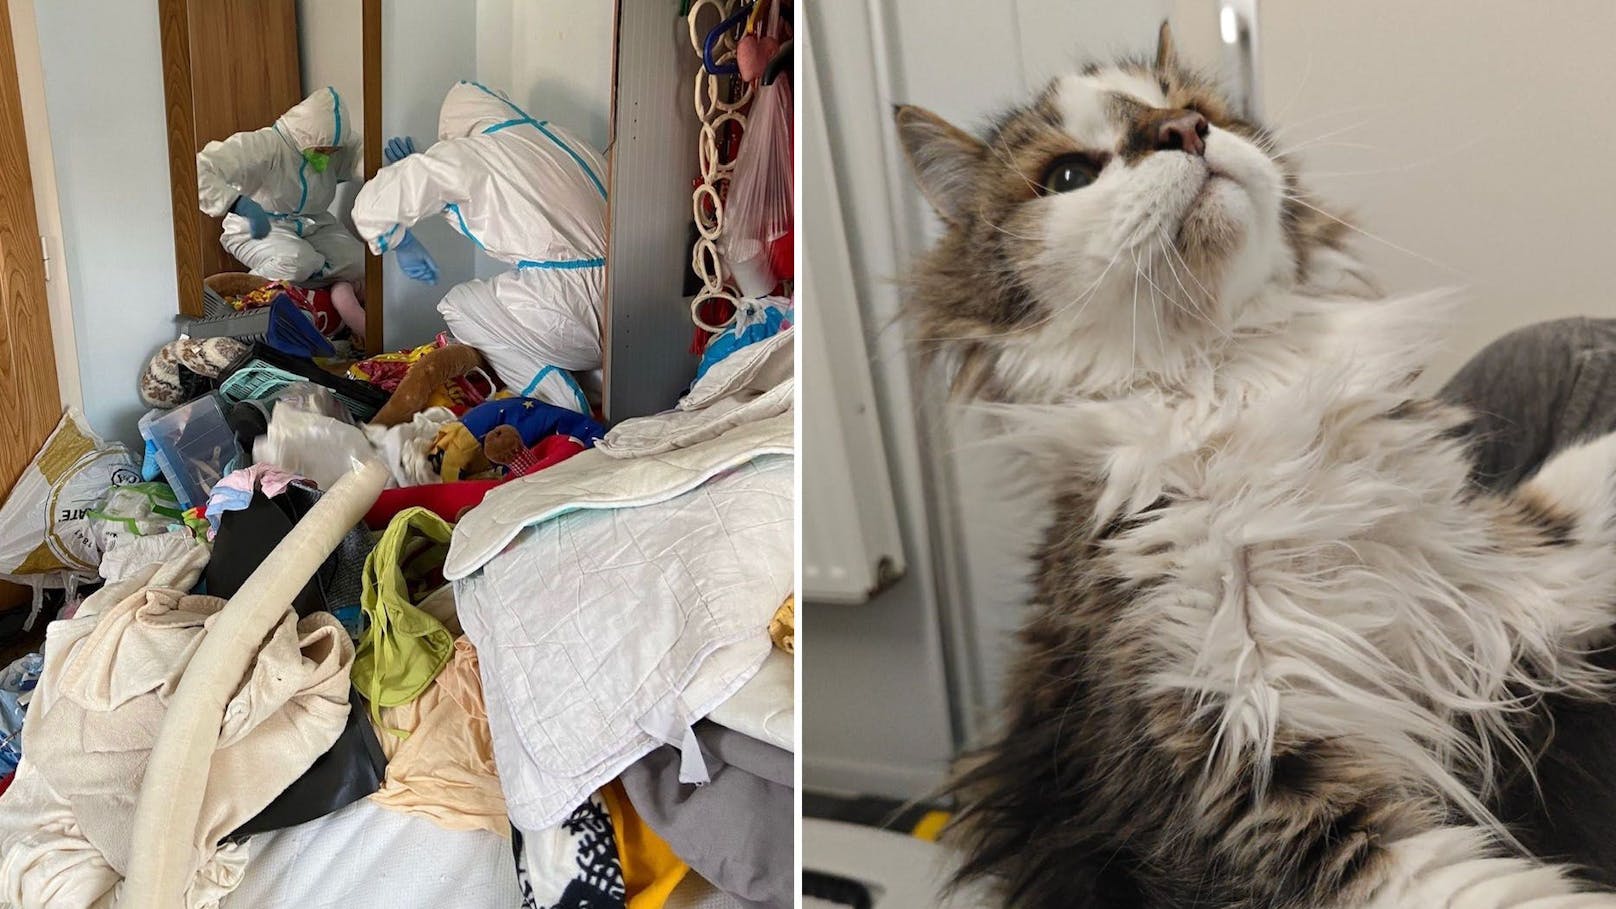 Sechs Katzen aus Messie-Wohnung mit Toter gerettet